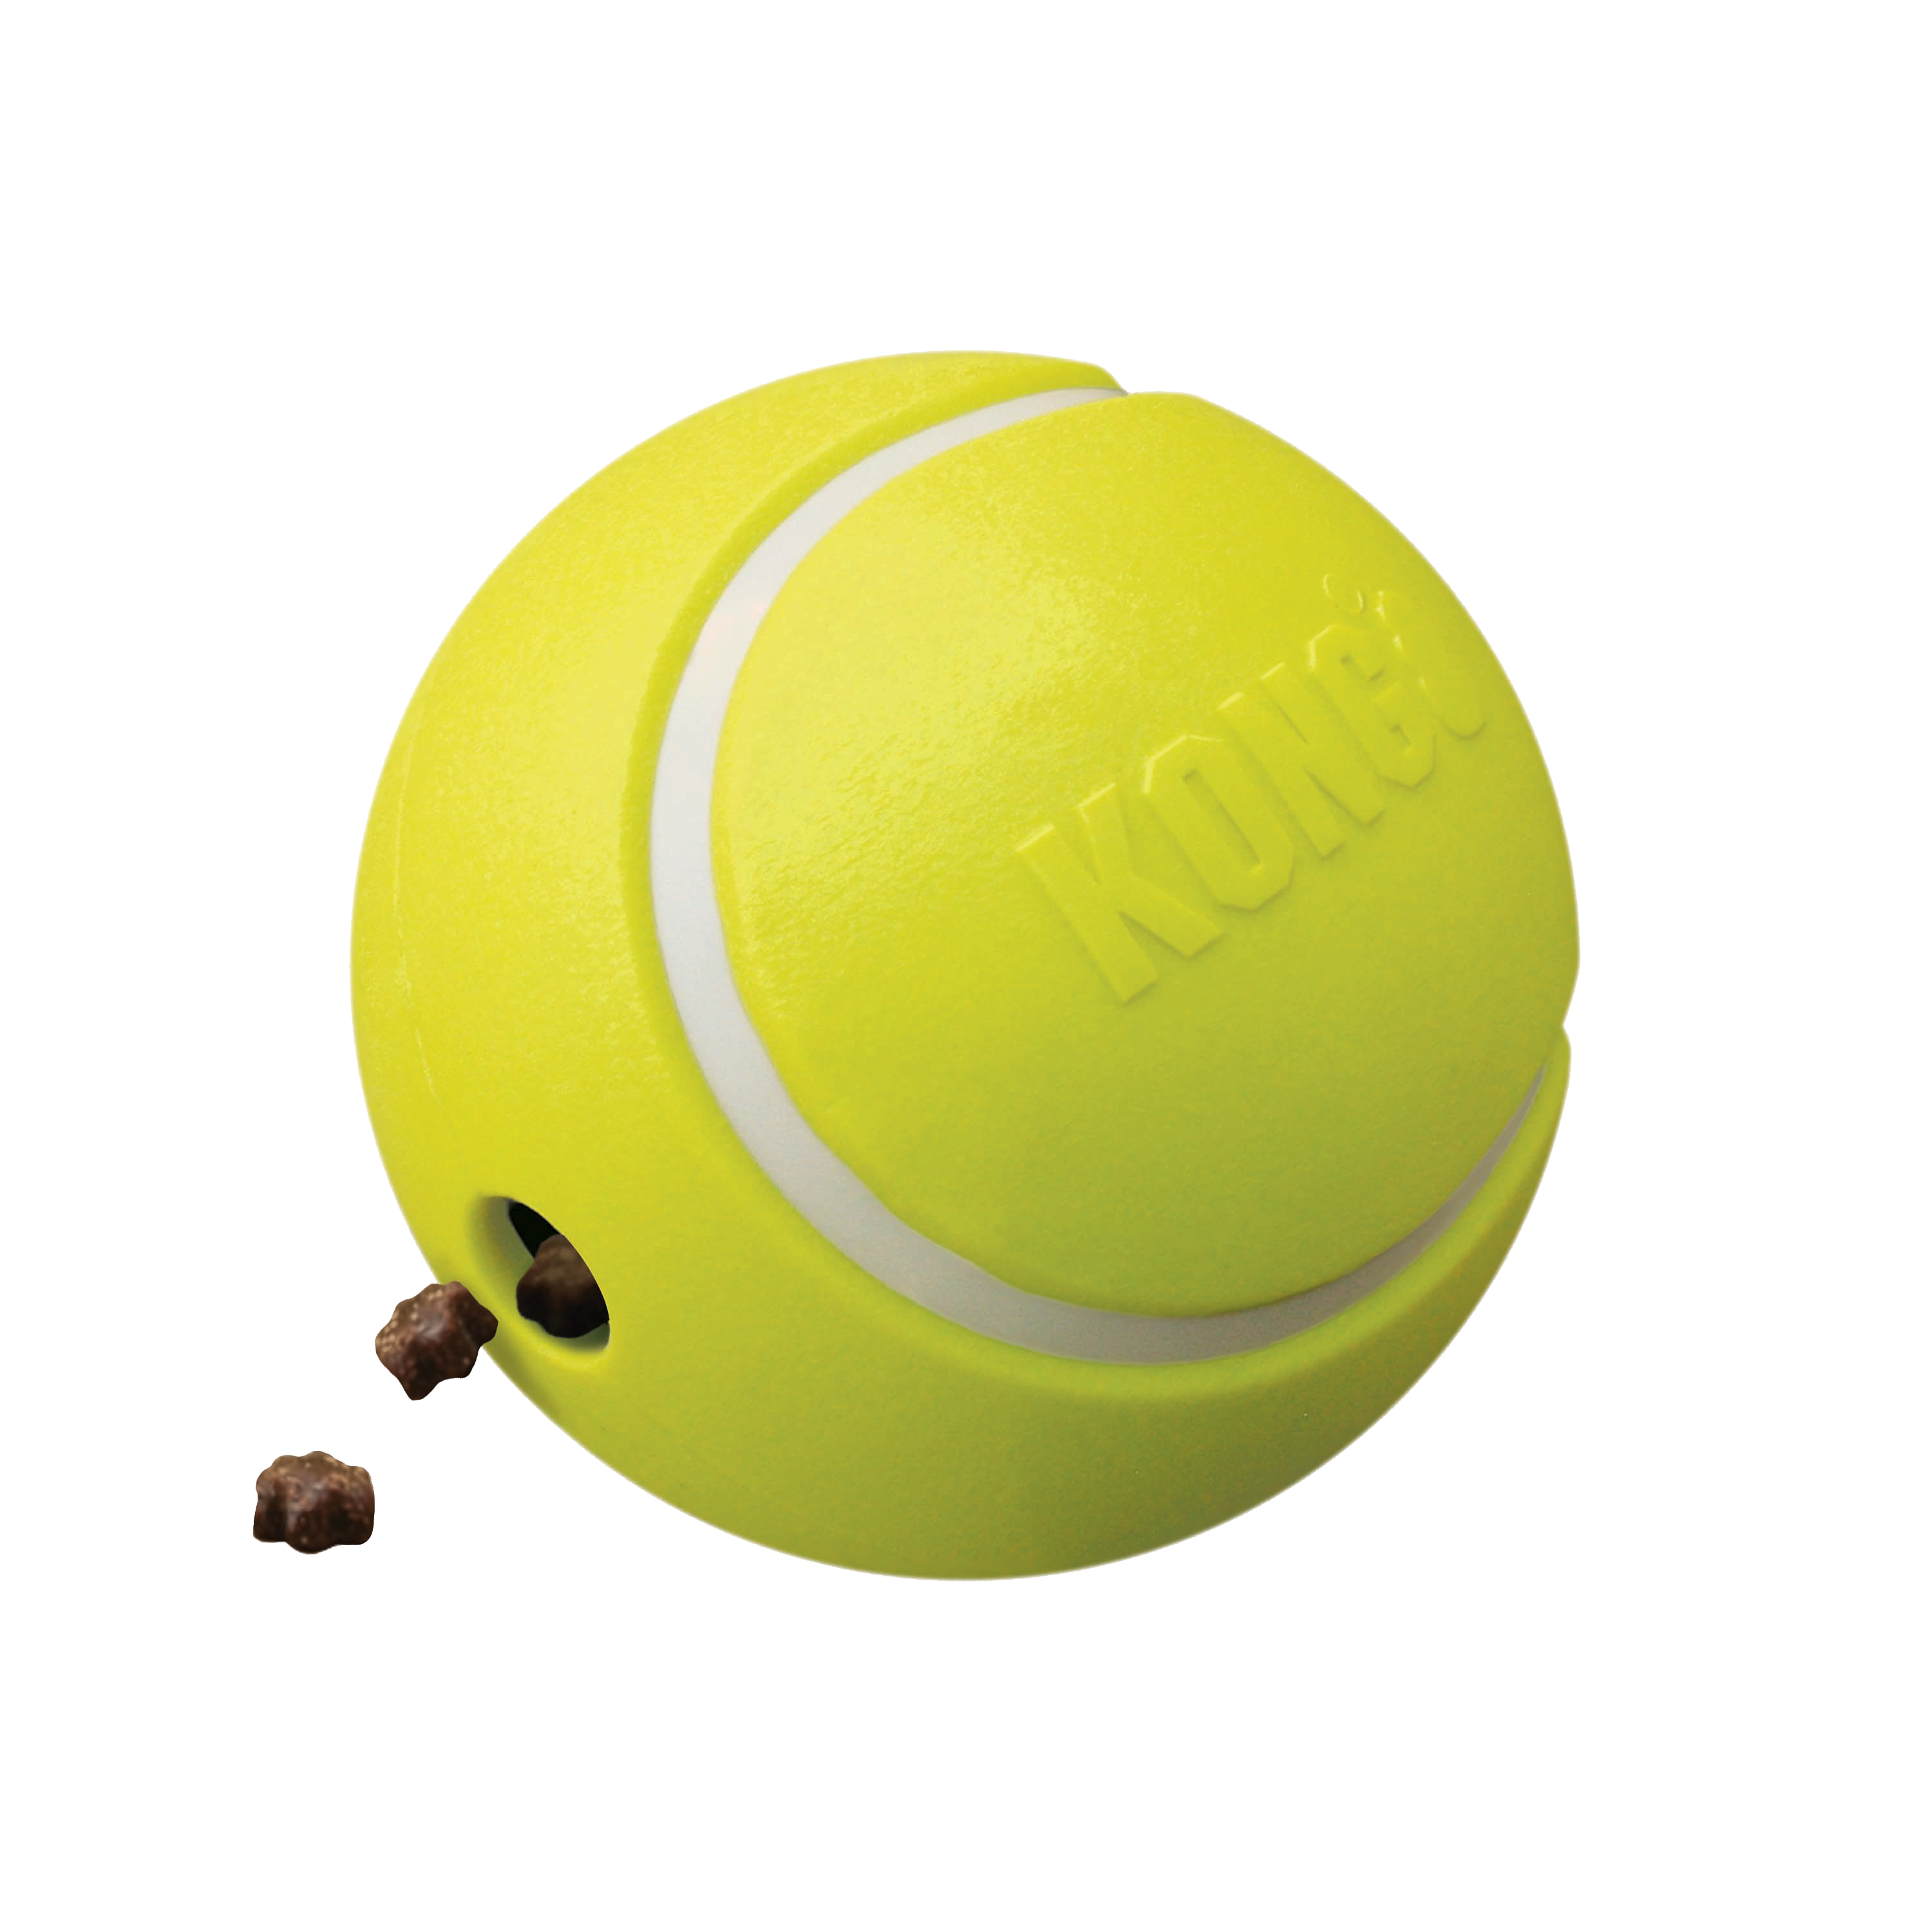 Premi Tennis immagine del prodotto offpack